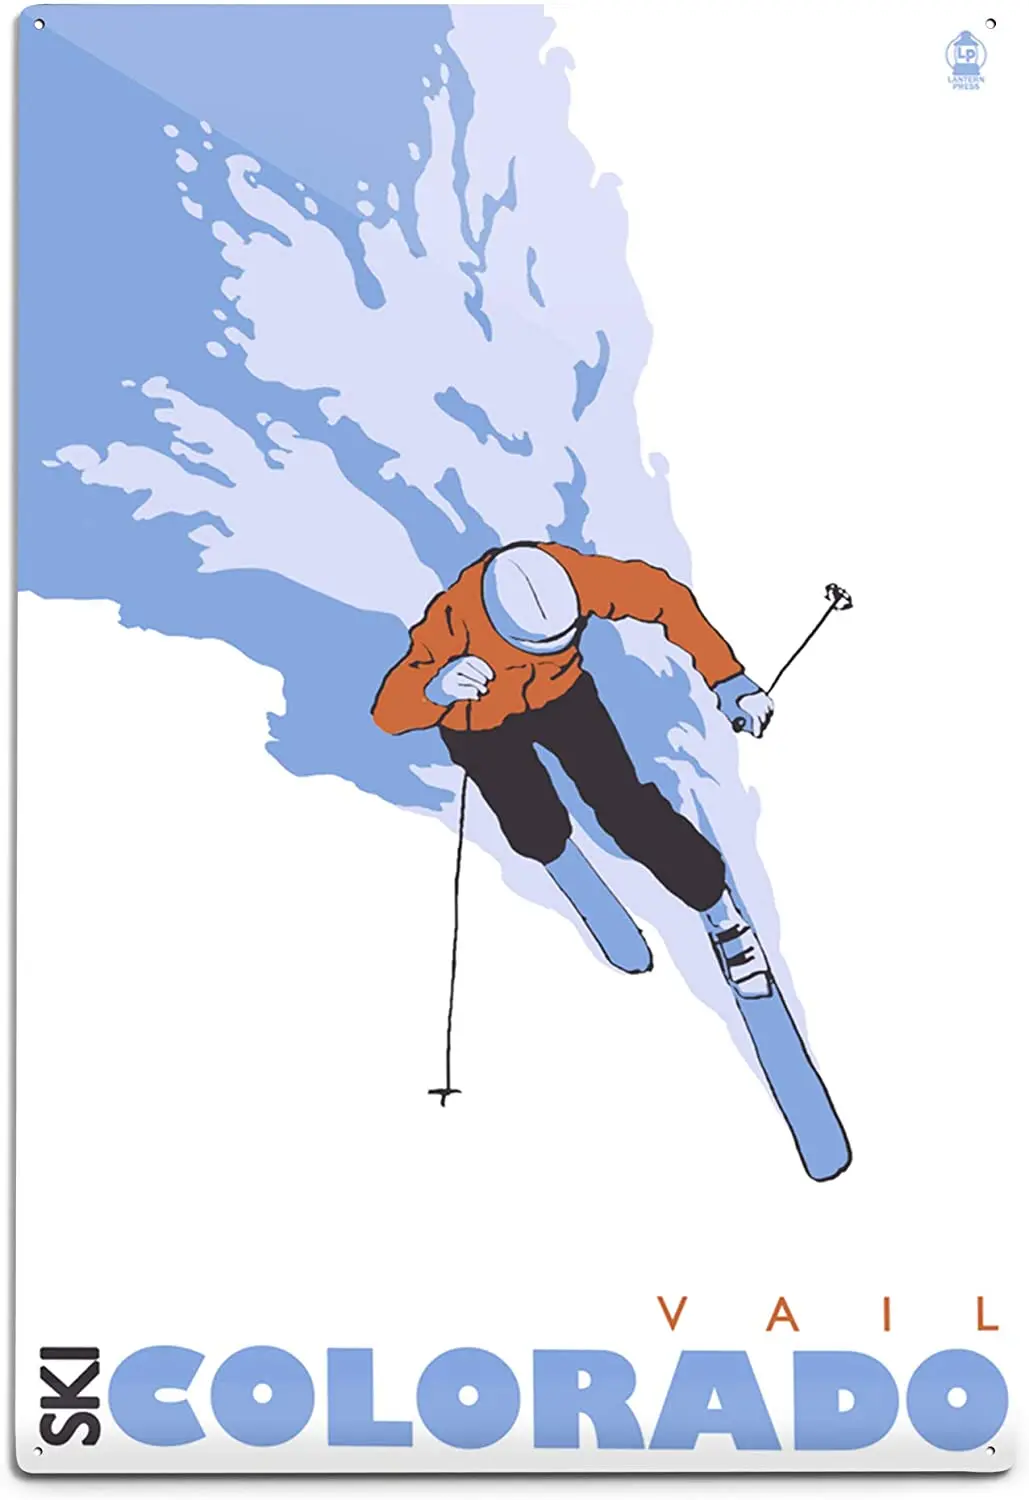 

Фонарь-пресс стилизованный Skier - Vail, CO 24339 (6x 9 алюминиевый настенный знак, Настенный декор готов для подвешивания)